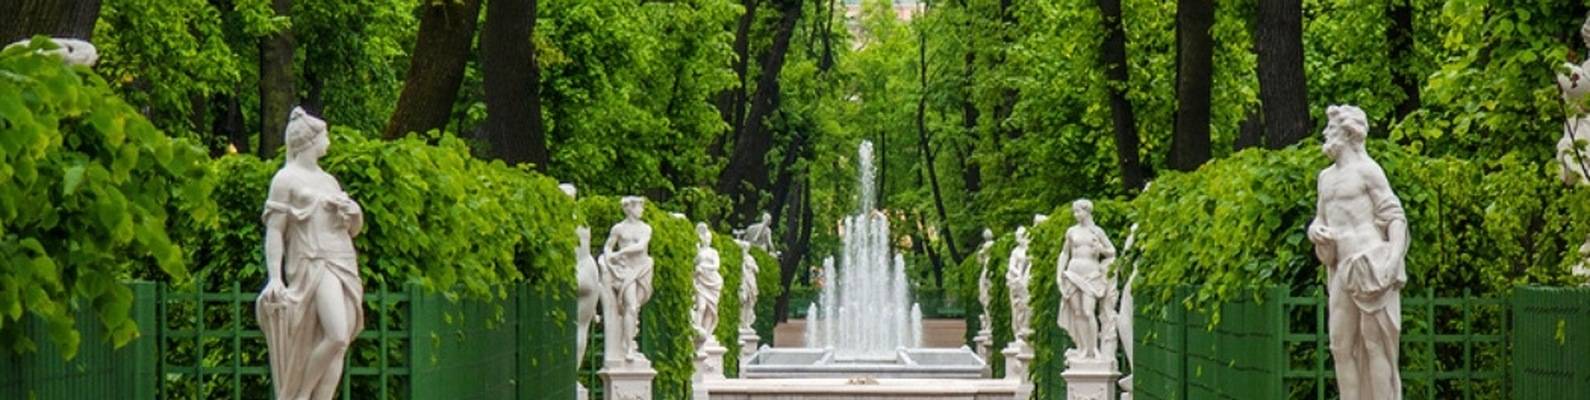 Летний дворец и сад в санкт-петербурге: история создания и знакомство с архитектурой и интерьерами